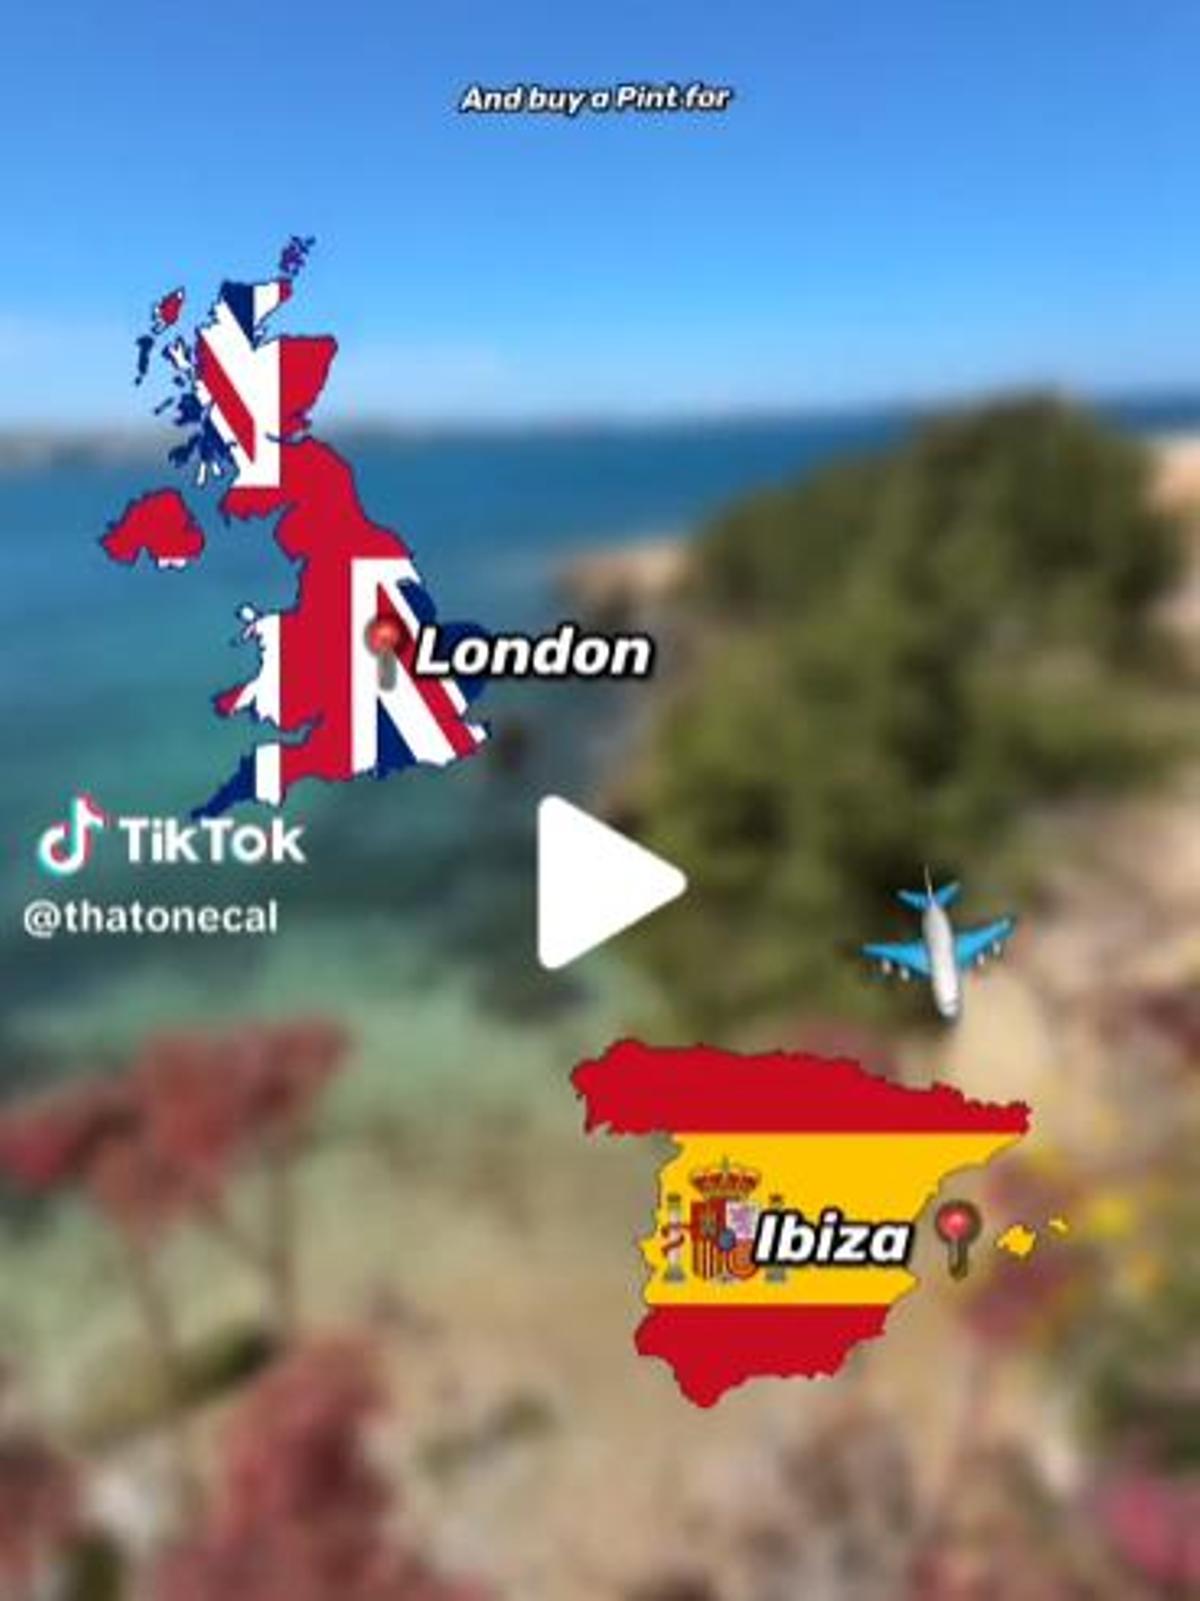 Una imagen del vídeo del tiktoker británico